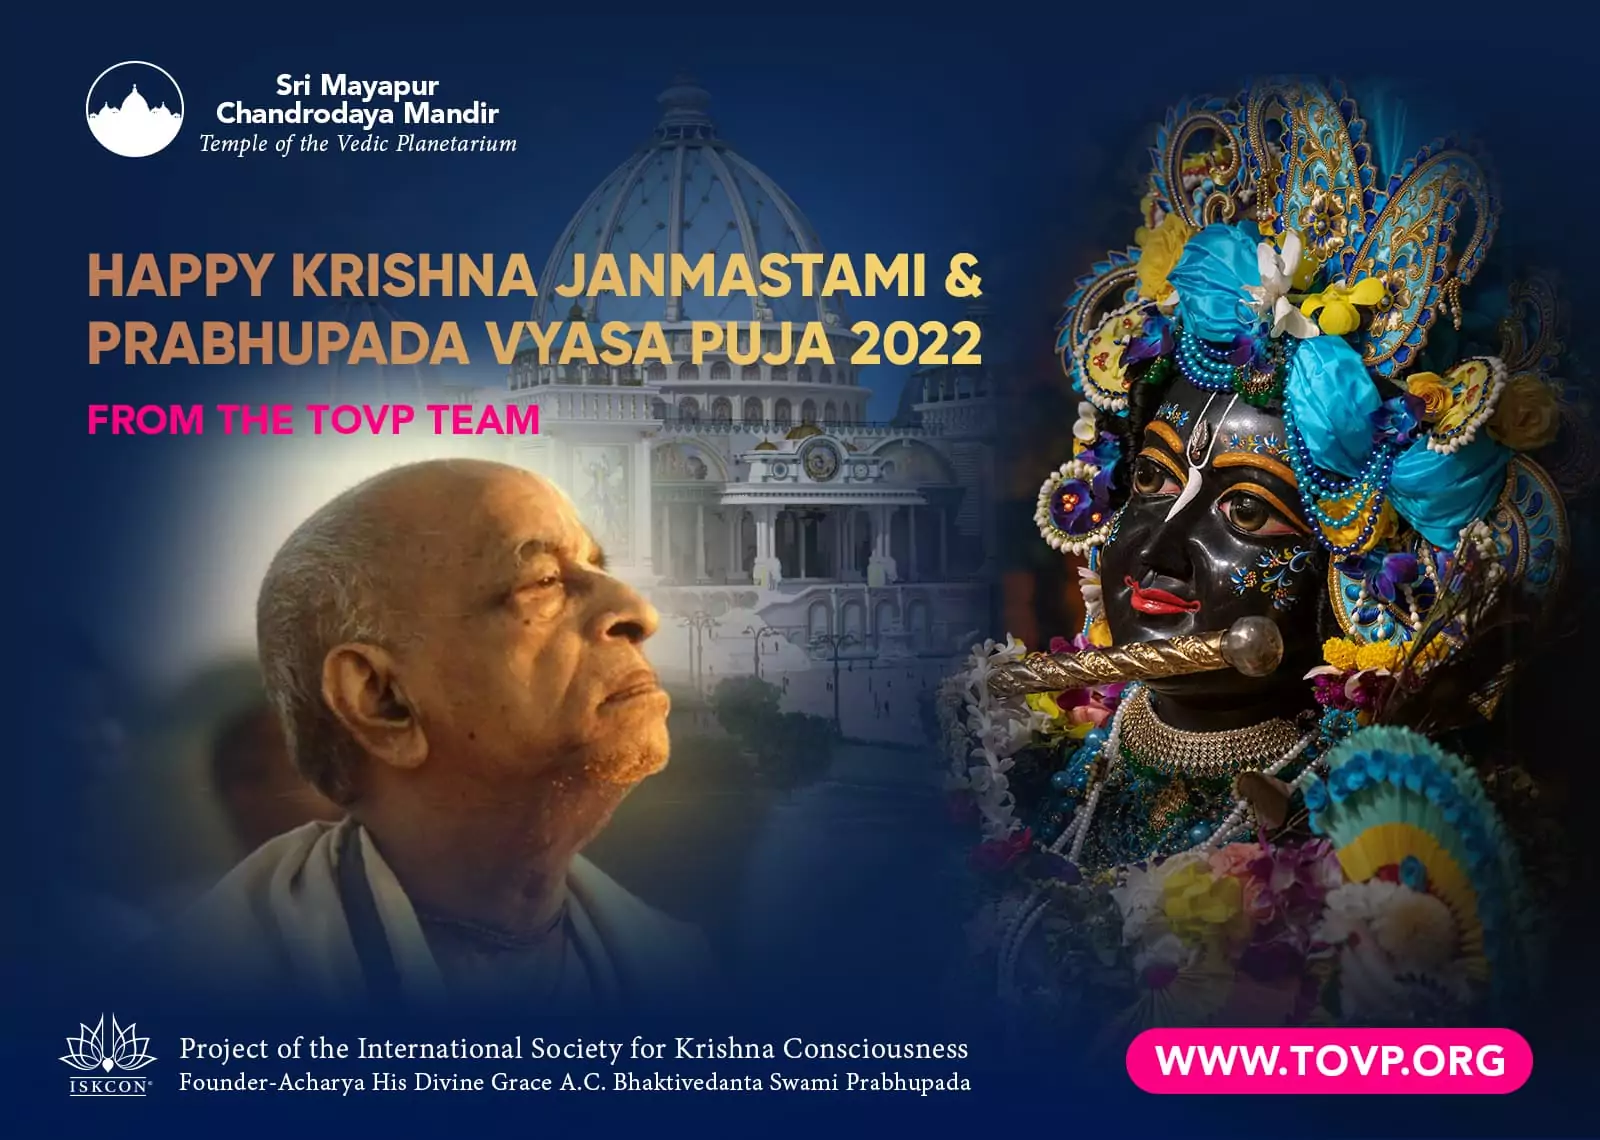 Alles Gute für Krishna Janmastami und Prabhupada Vyasa Puja 2022 vom TOVP-Team